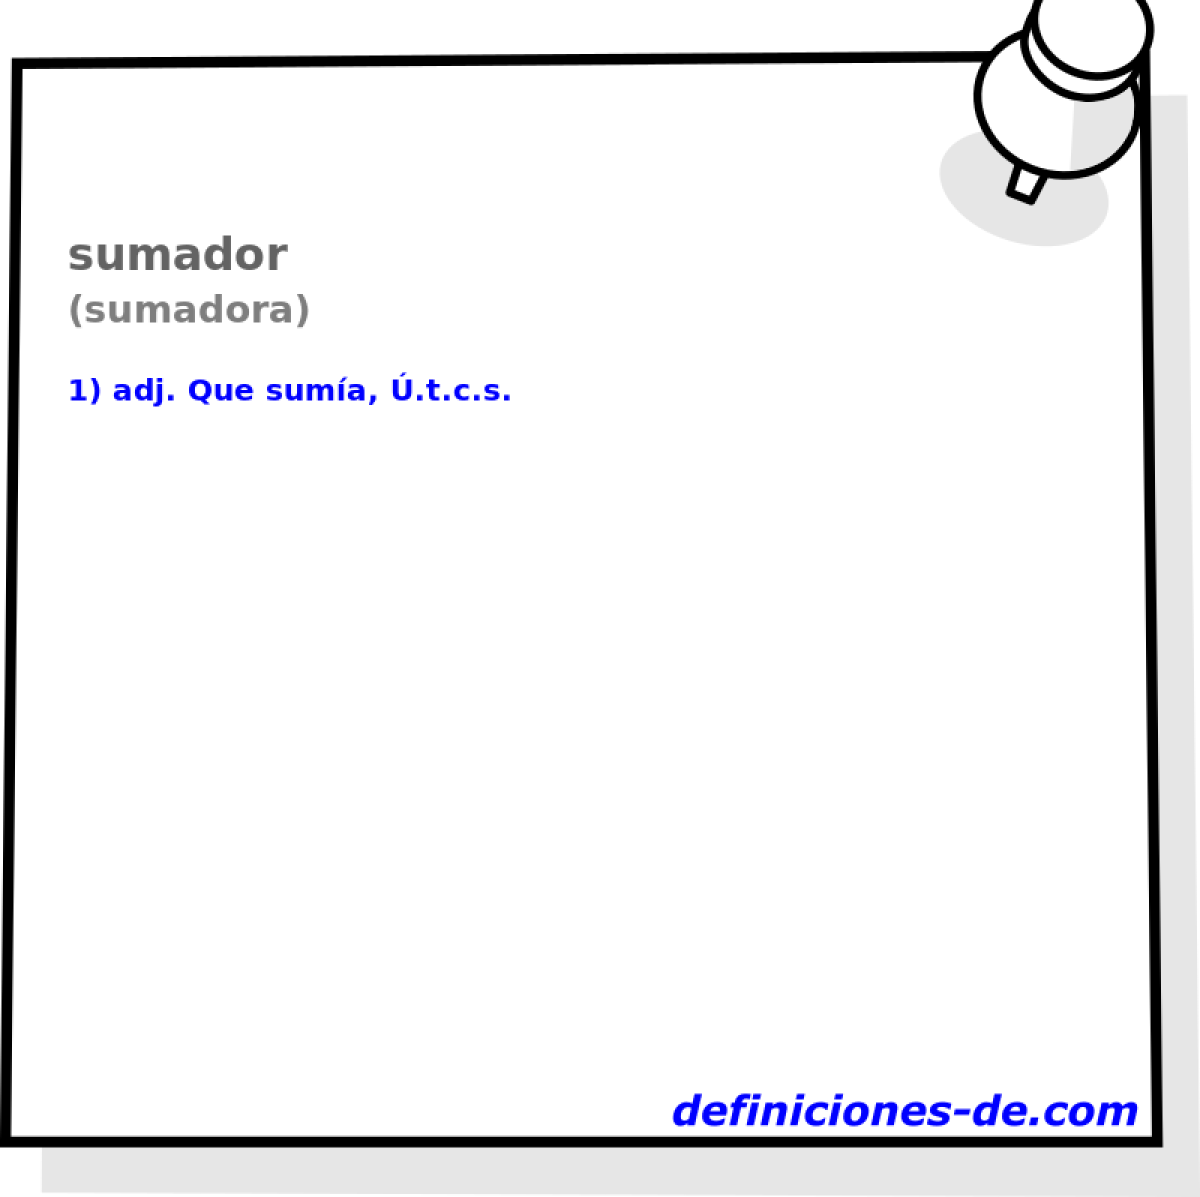 sumador (sumadora)